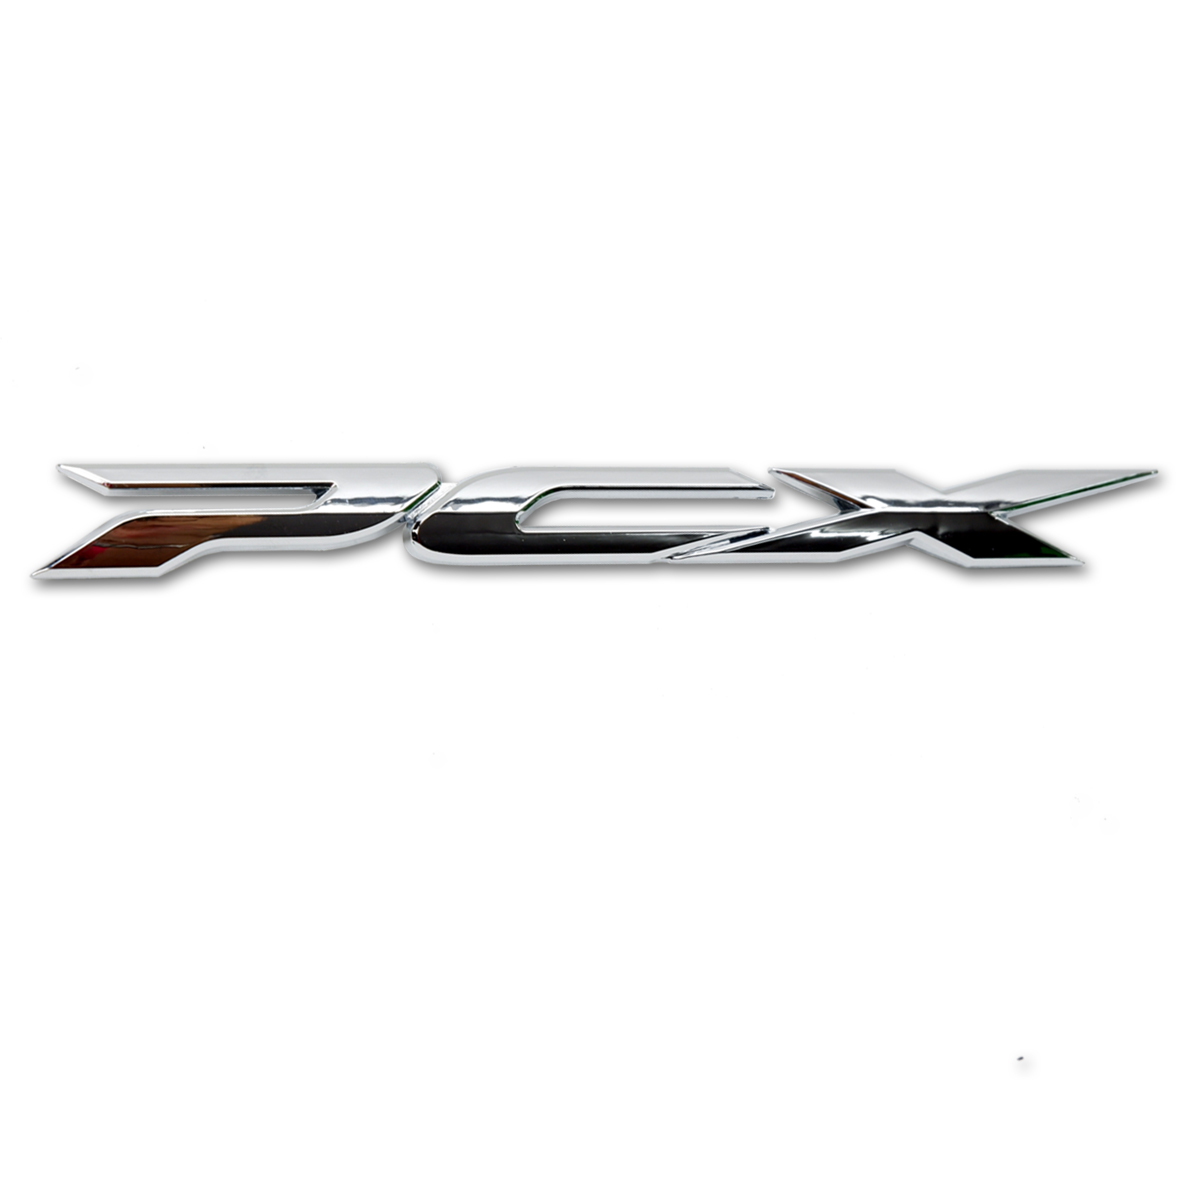 Logo Emblem Decal "PCX" Trim Chrome For Honda PCX 150cc 2017-2018 | eBay